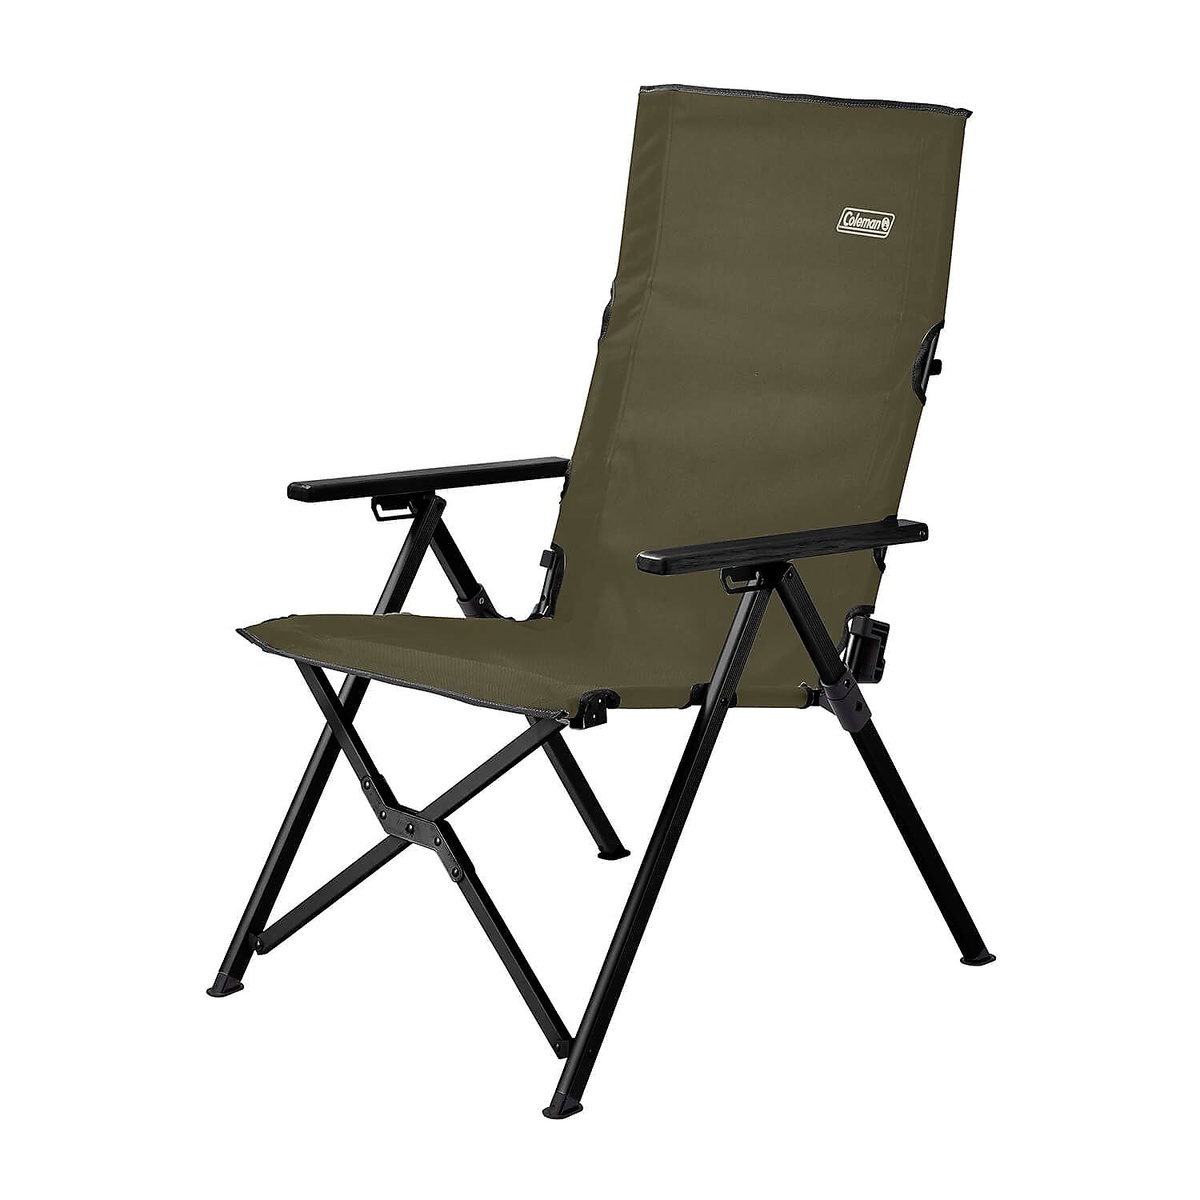 コールマン キャンプ用品 ファミリーチェア 年末年始大決算 椅子 オリーブ 2000033808 COLEMAN レイチェア 2020A/W新作送料無料